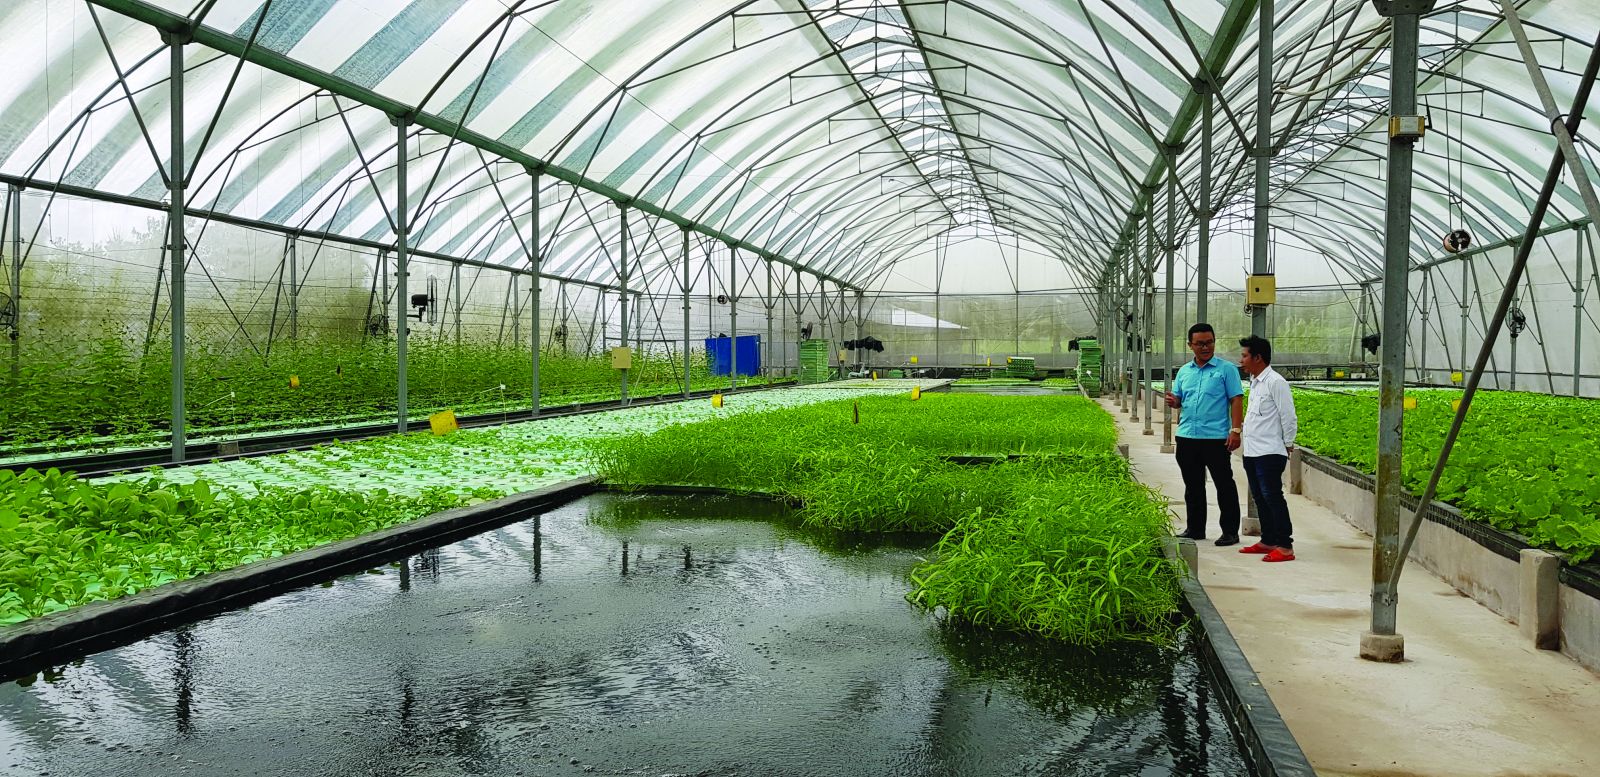  Mô hình Aquaponics –nuôi thủy sản kết hợp trồng rau thủy canh trong nhà kính của Công ty TNHH Nông sản Đồng Tháp AQUA.